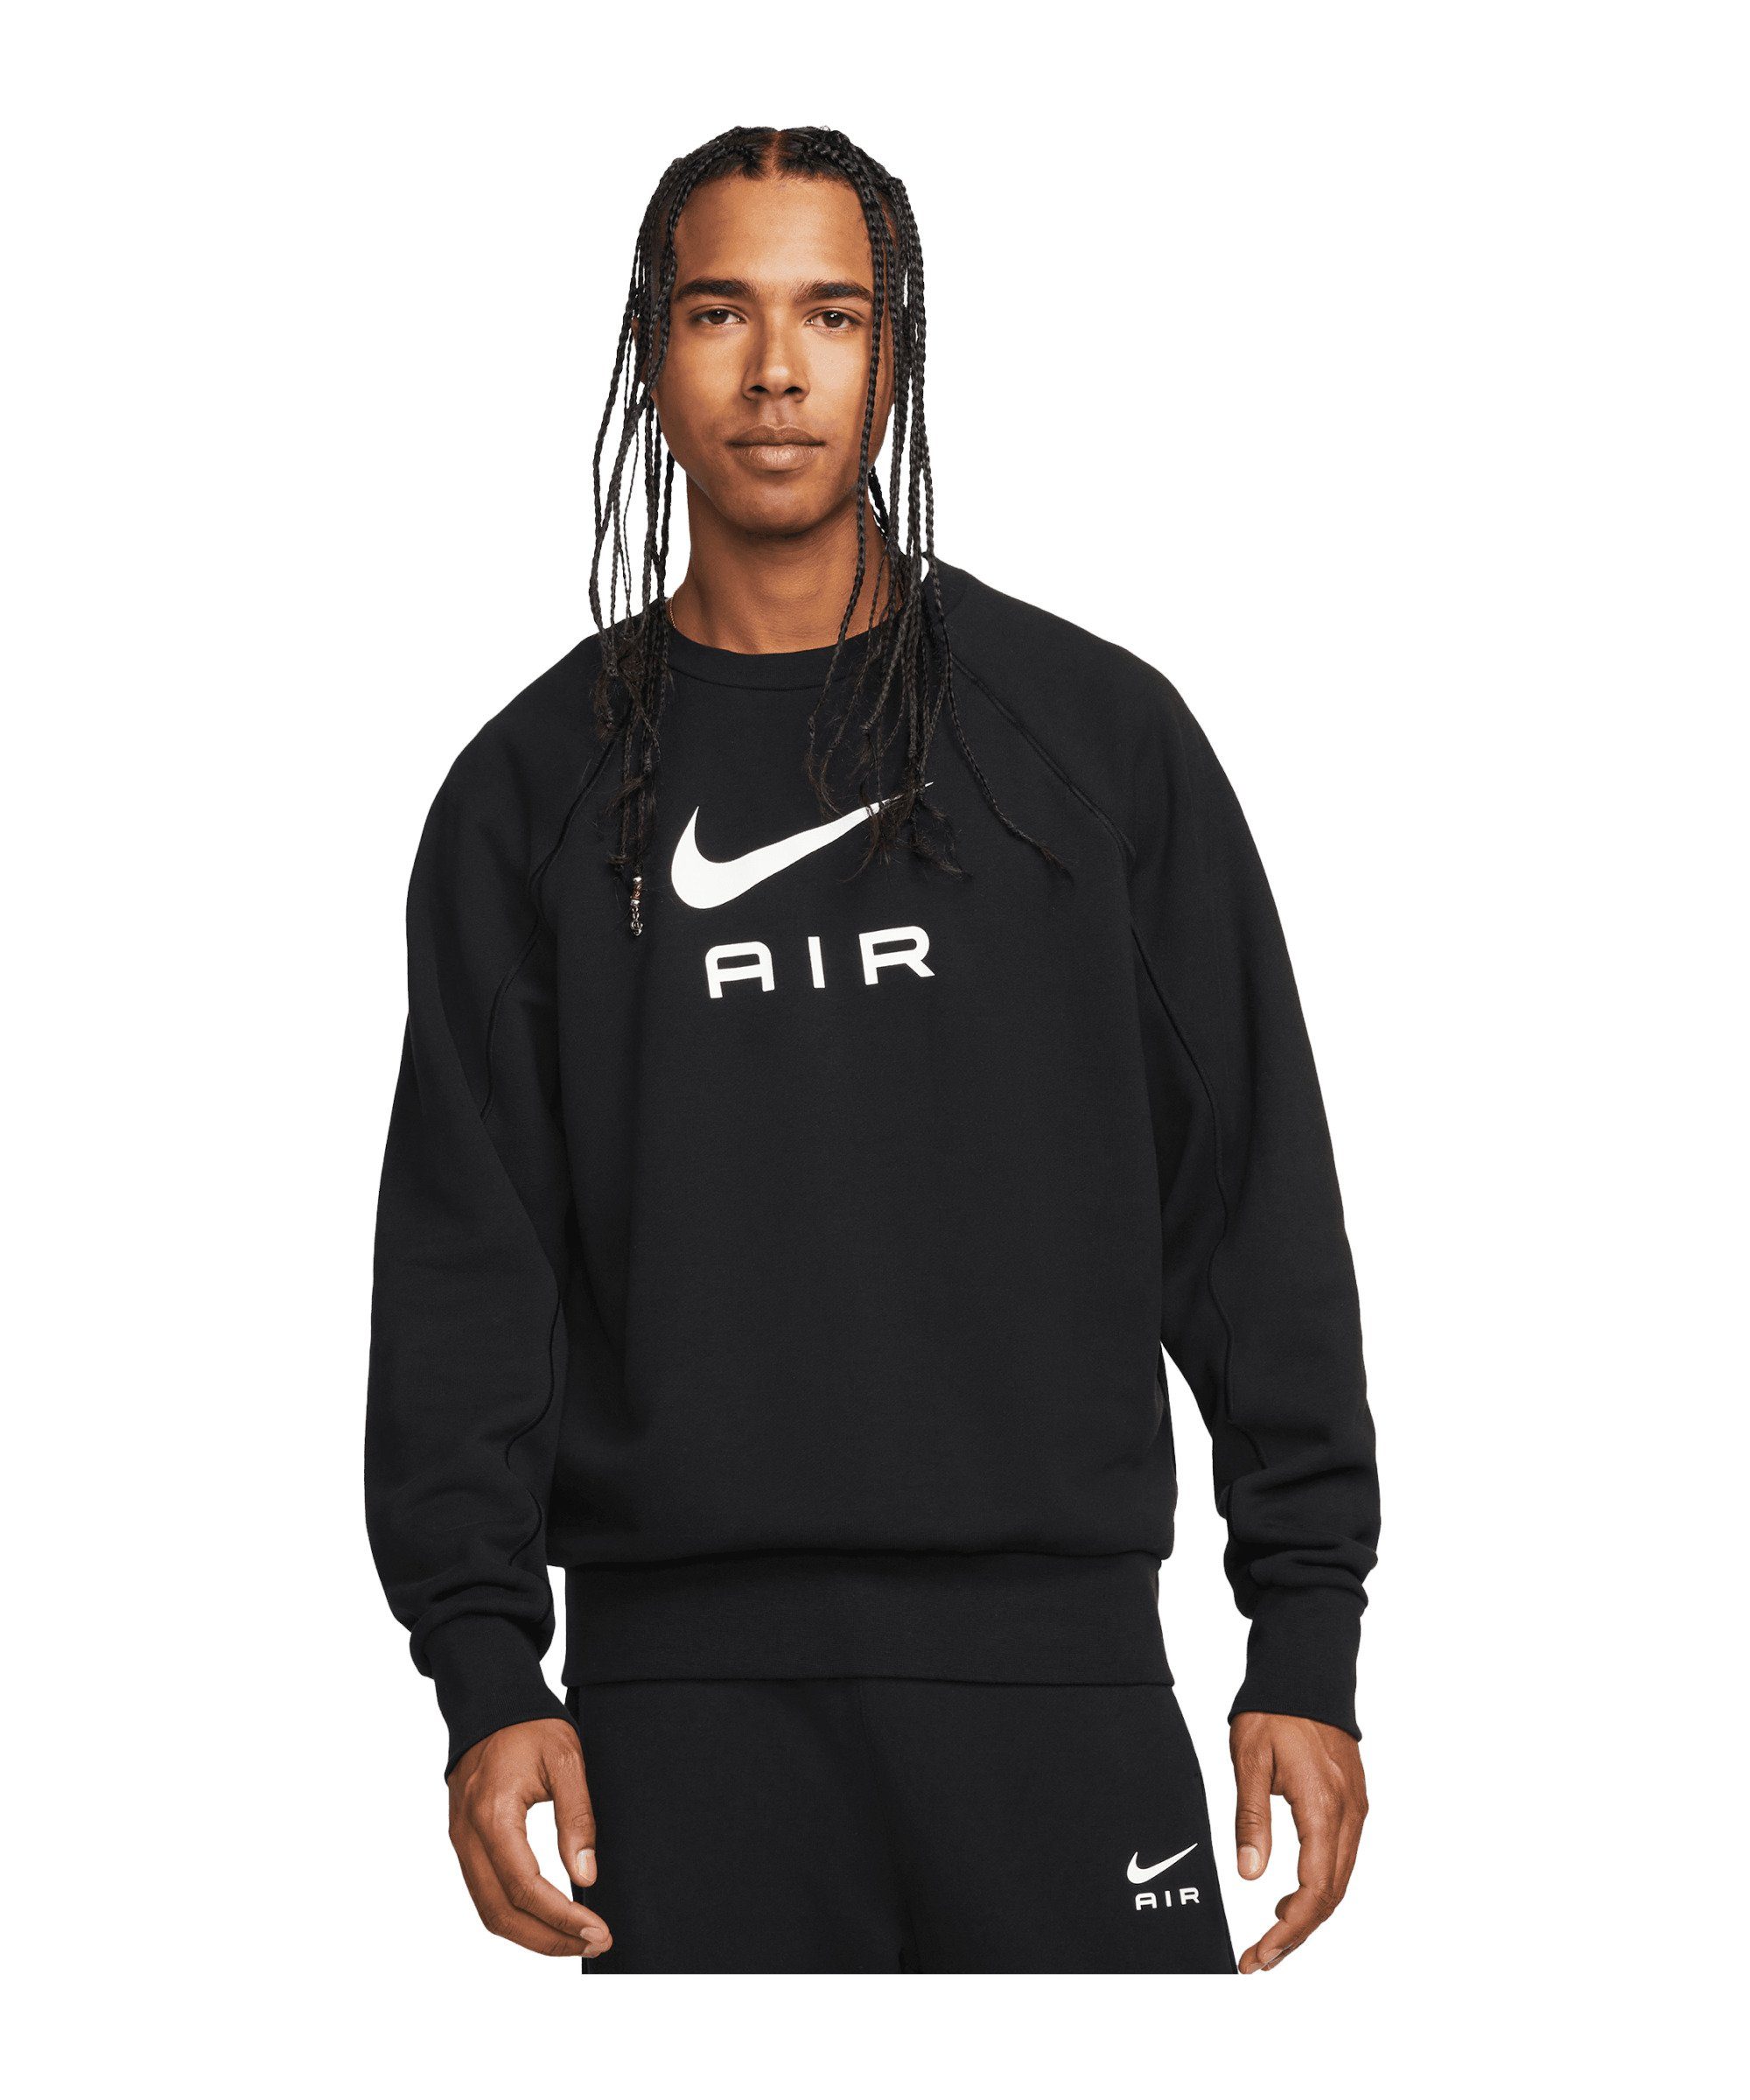 schwarzweiss Sweatshirt Nike Sportswear Air Crew FT Sweatshirt